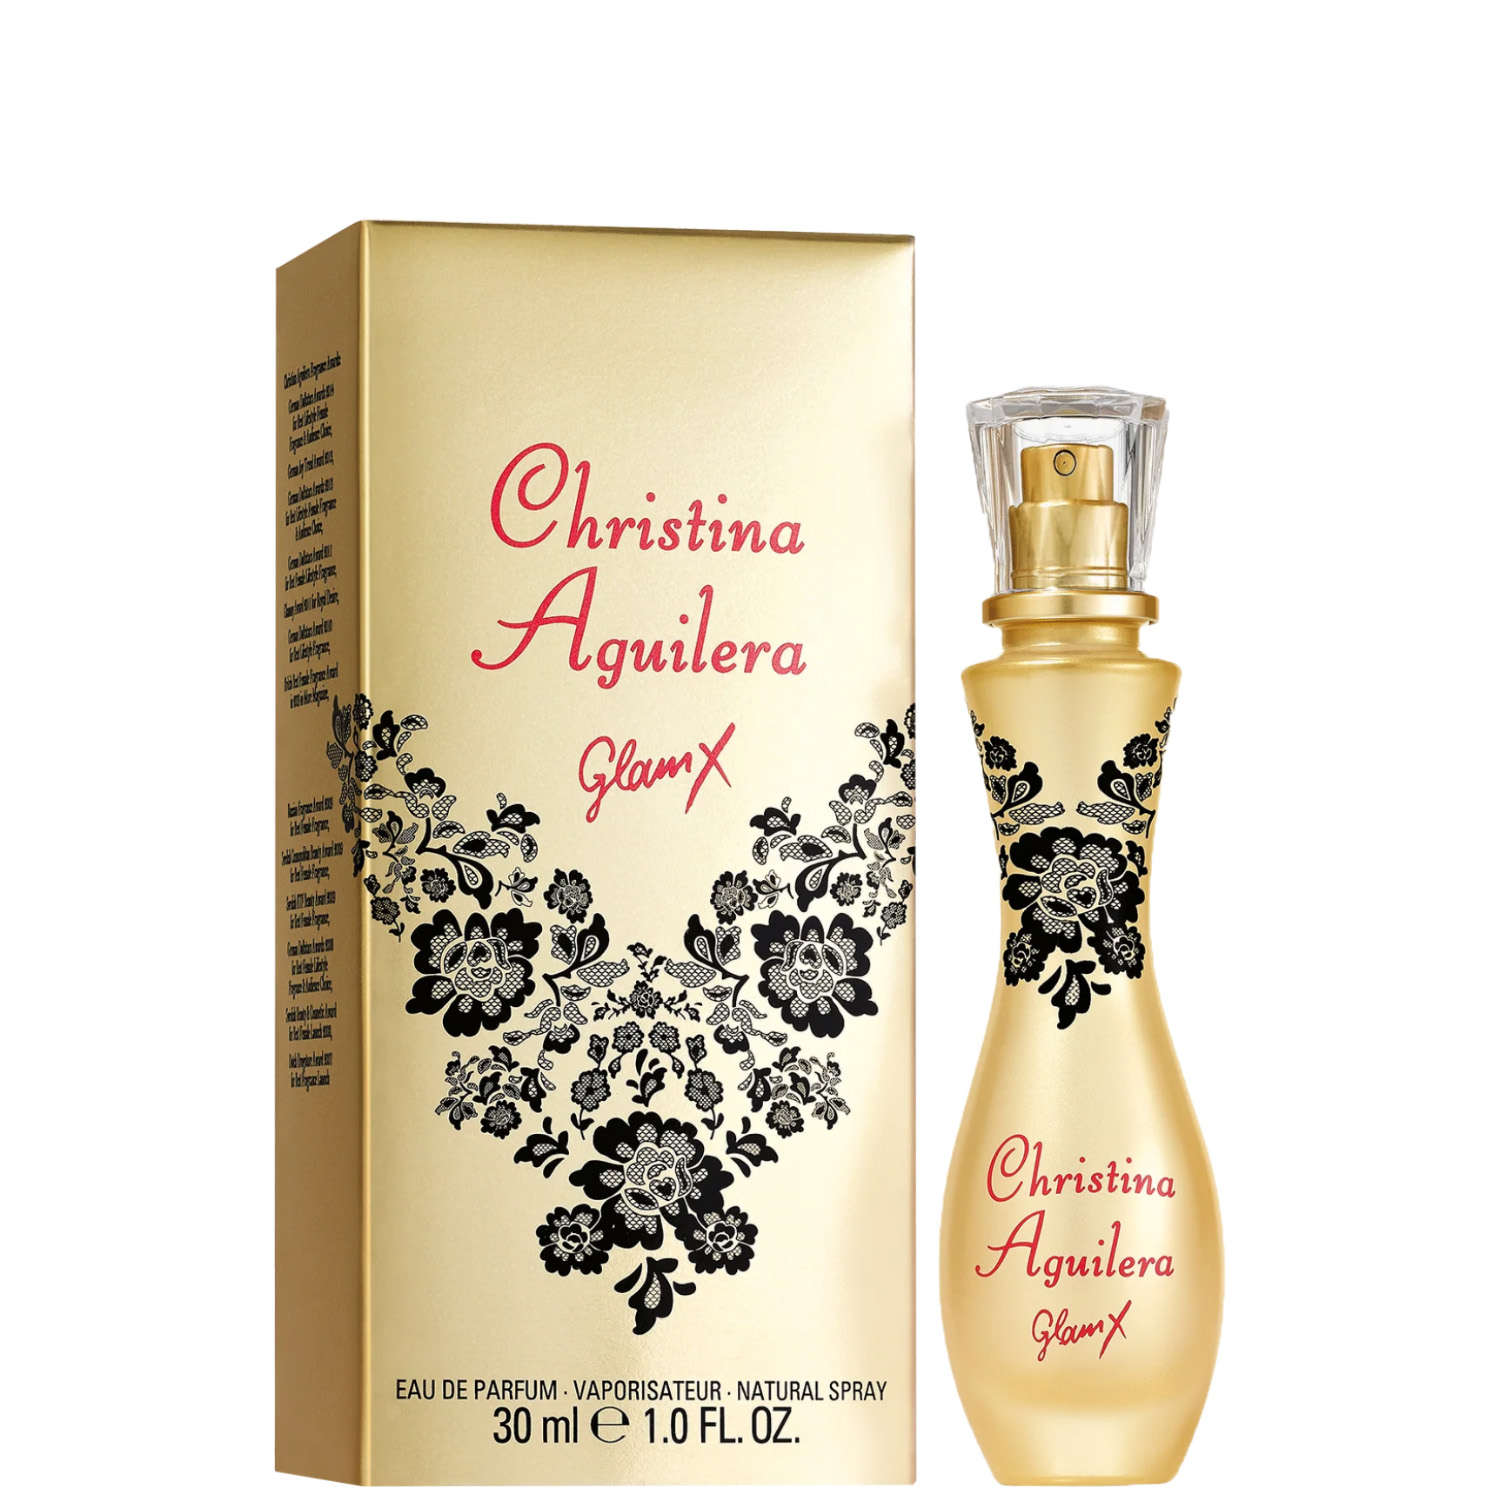 Christina Aguilera Glam X Eau de Parfum 30ml